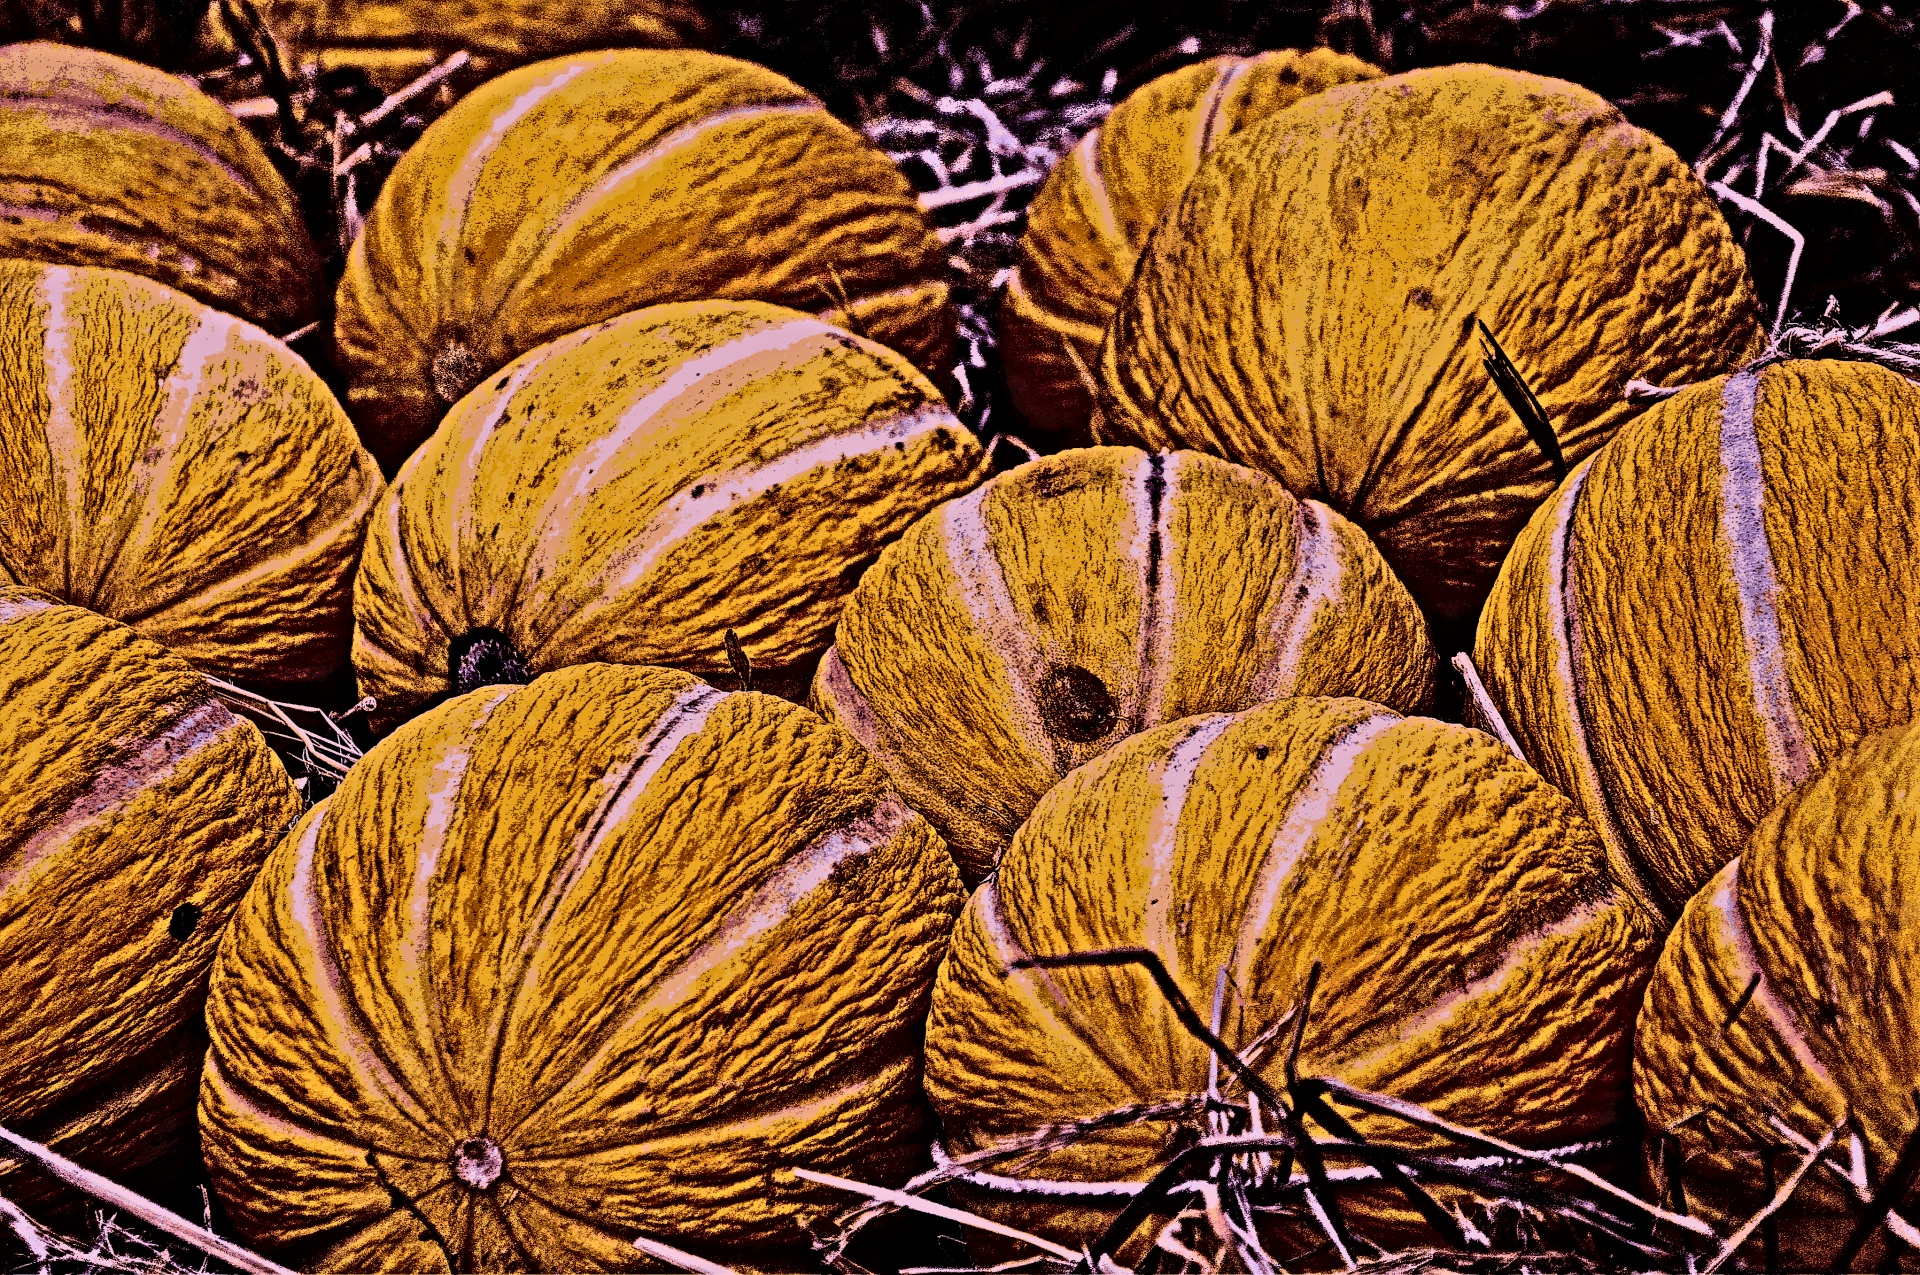 Cantaloupes